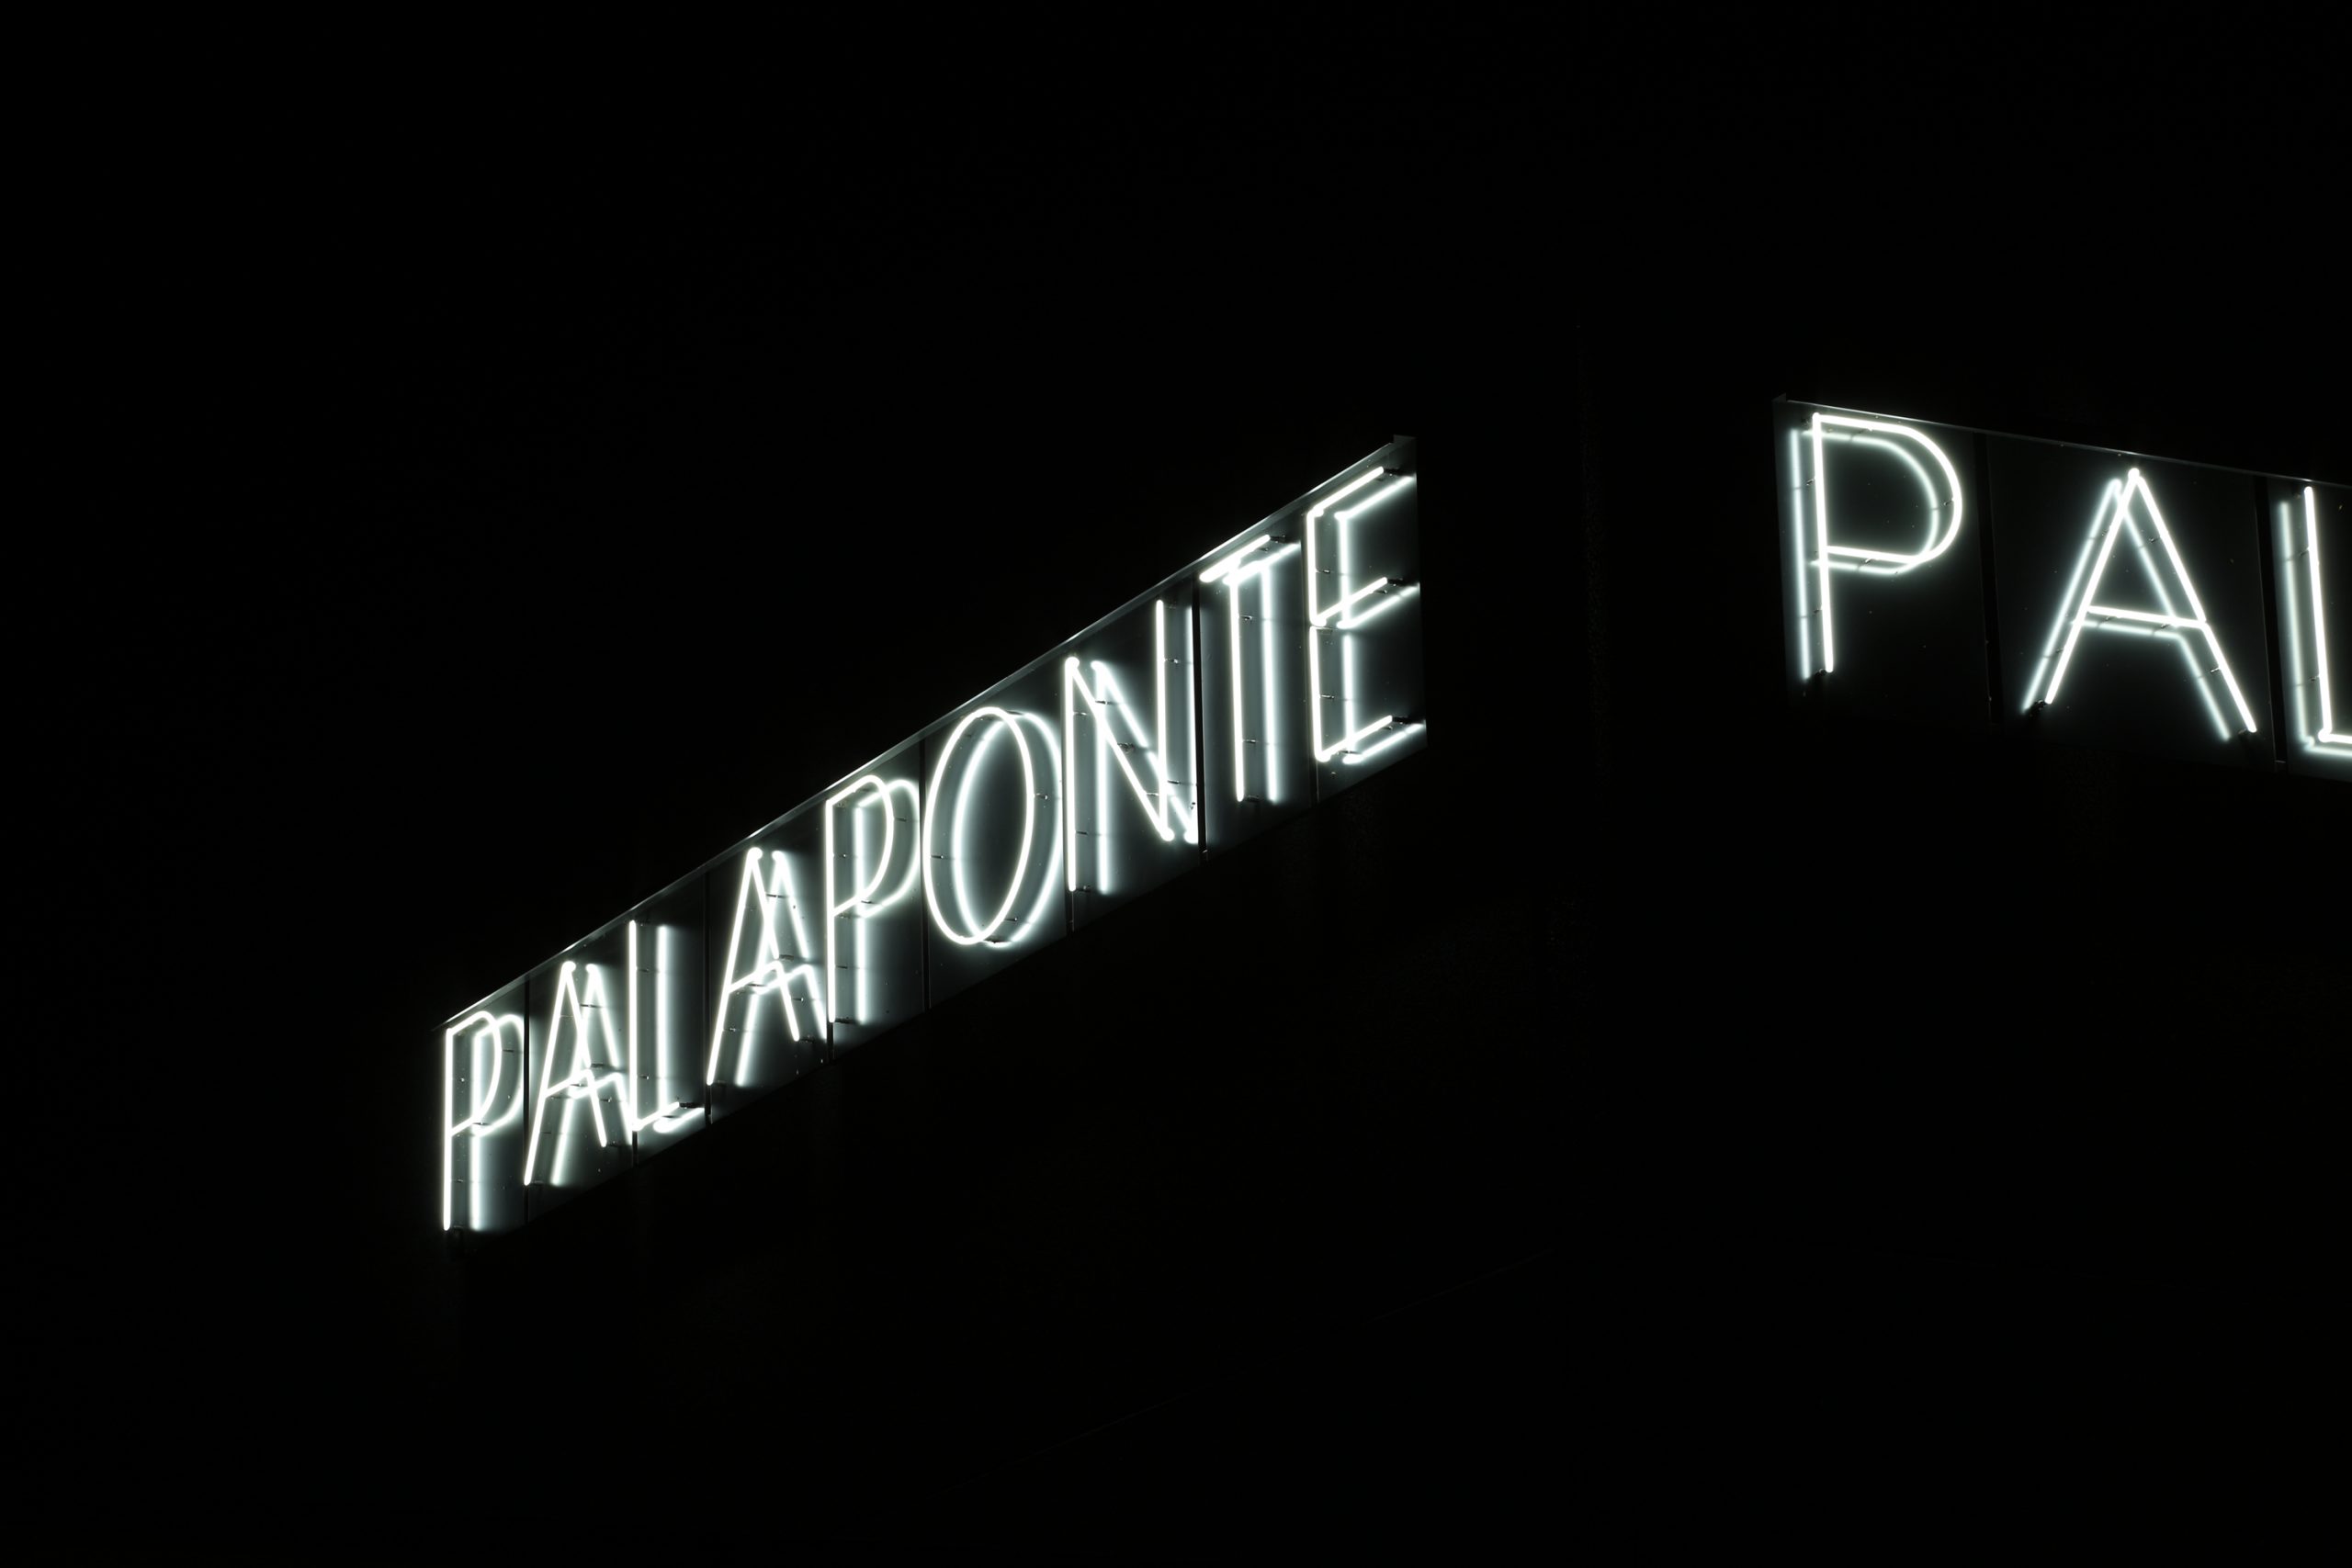 Palaponte - Ponte San Pietro Bg - oberti+oberti | architetti